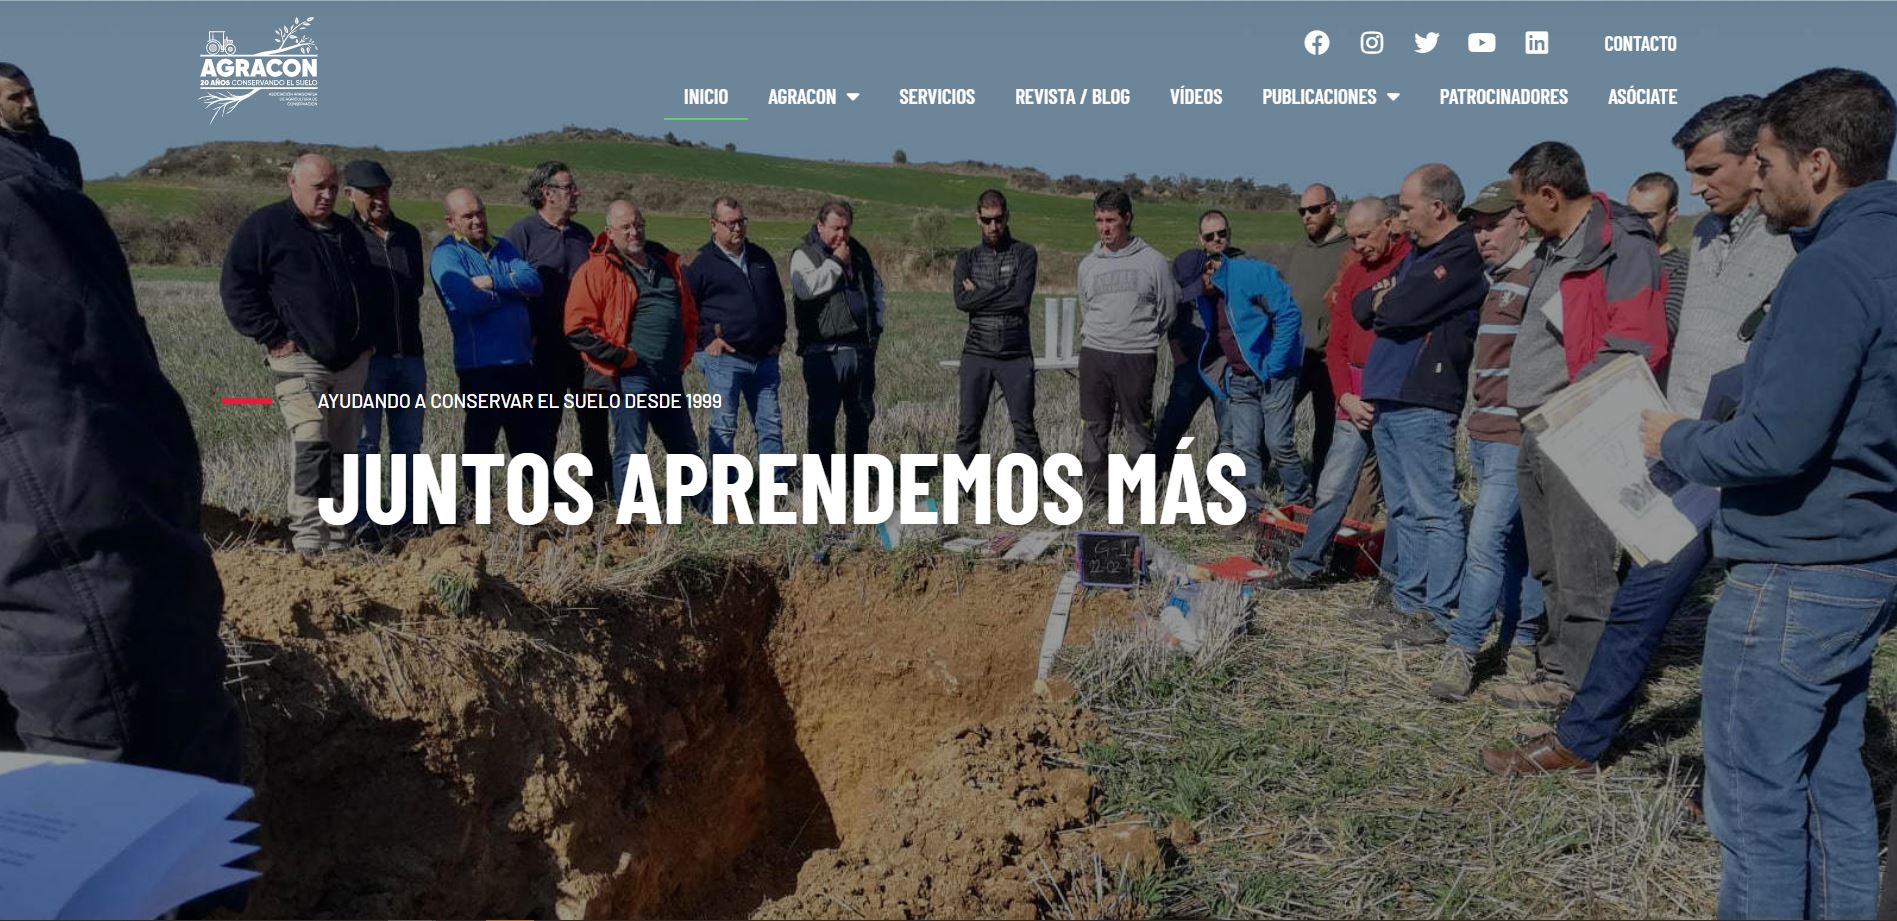 Portada de web asociación de conservación de agricultura de Aragón